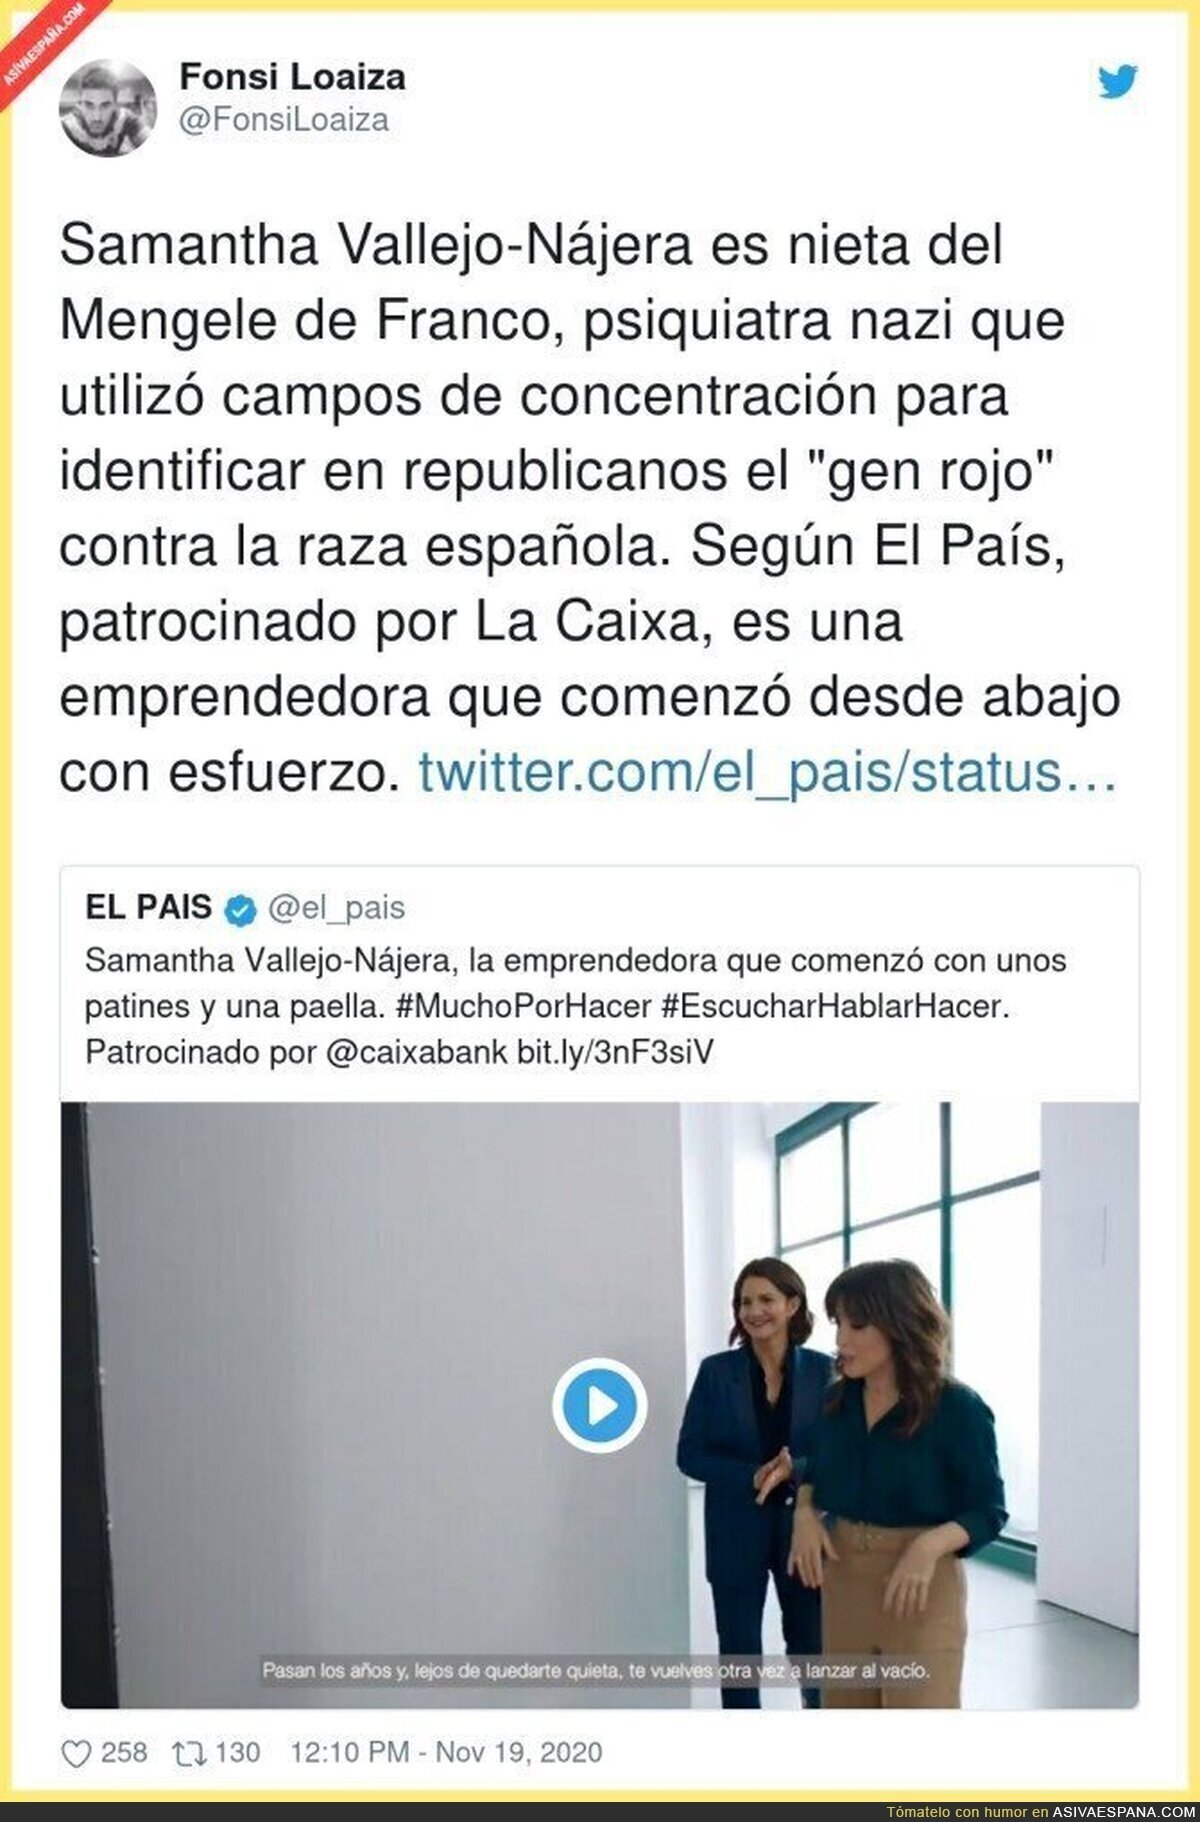 Los emprendedores que patrocina Caixabank y publicitados en 'El País'